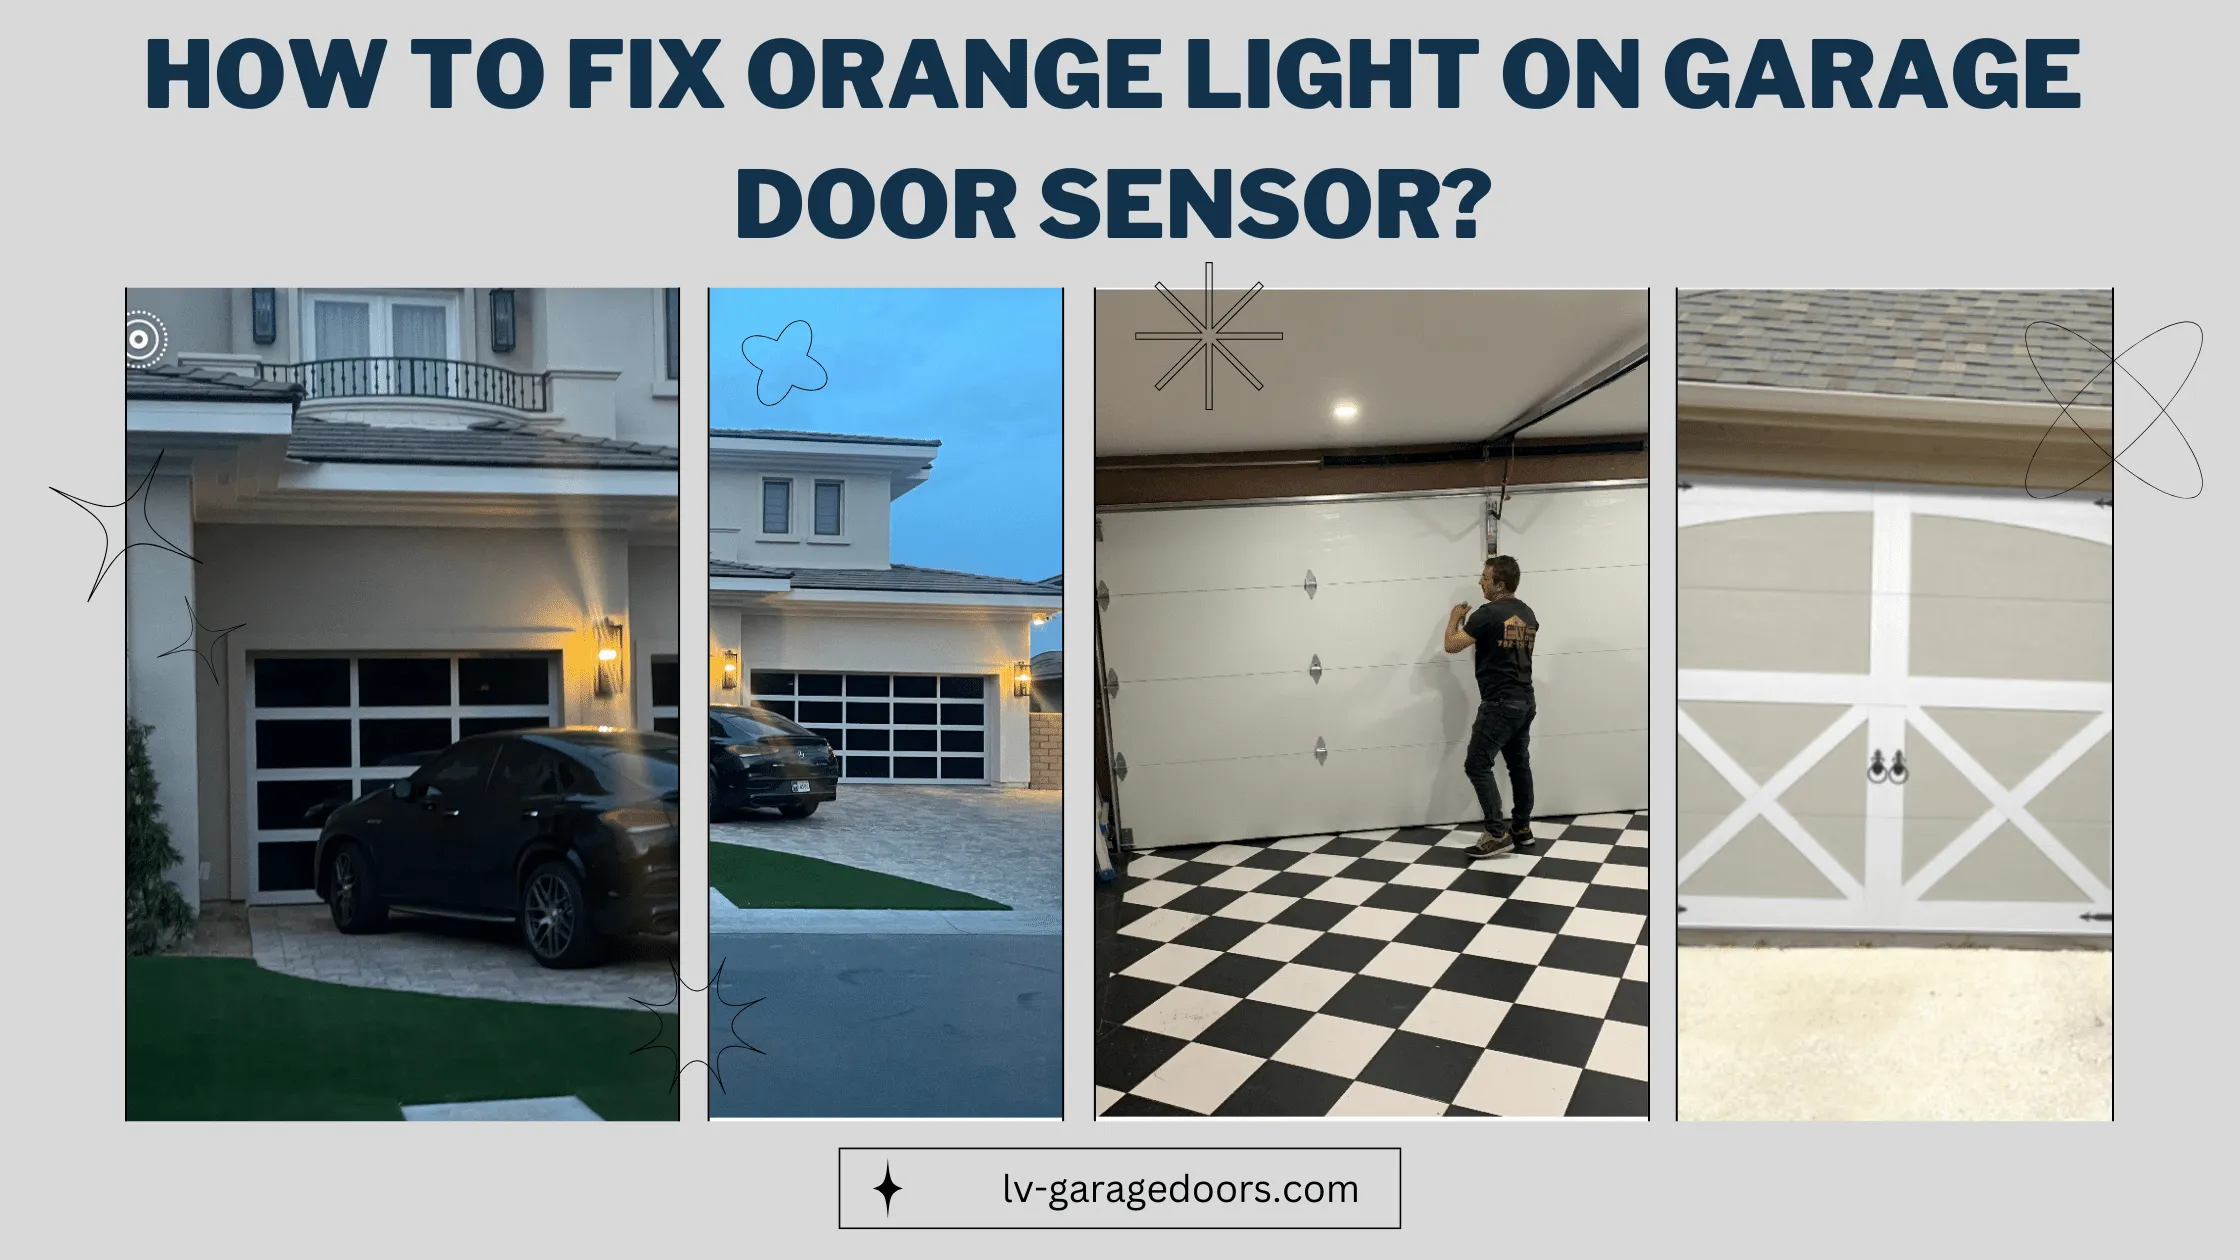 How To Fix Orange Light on Garage Door Sensor